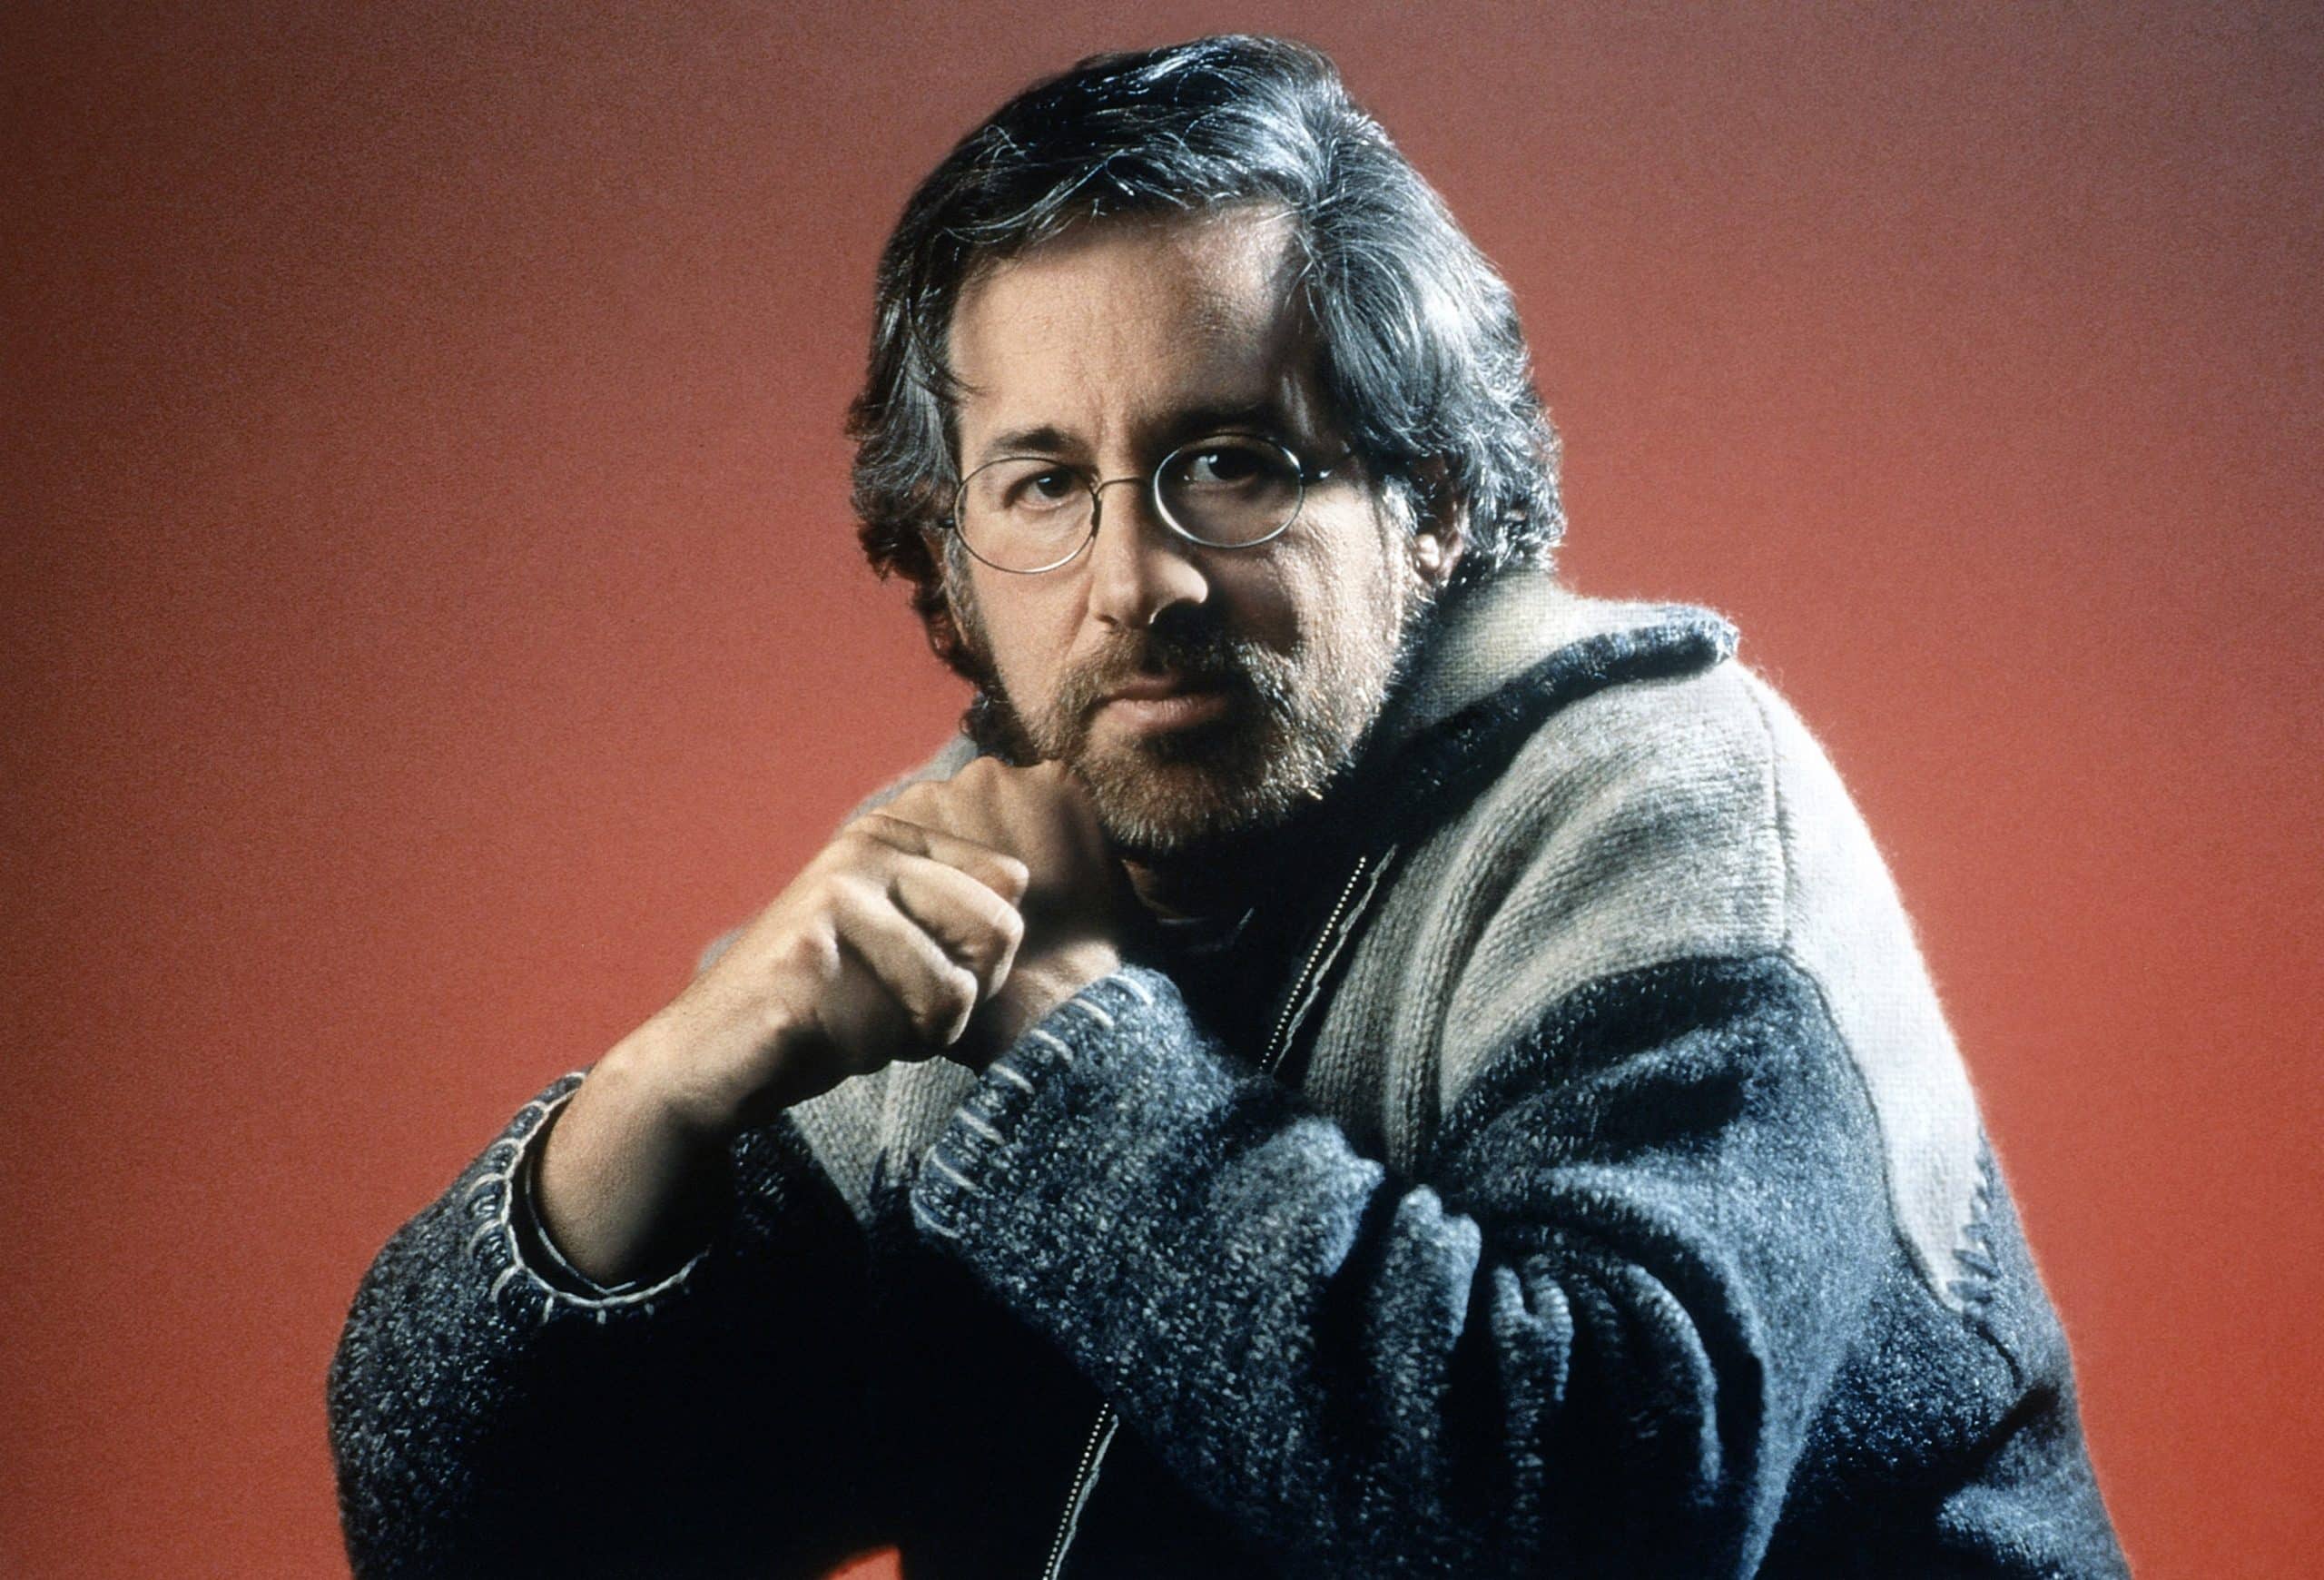 Steven Spielberg, circa 1990s